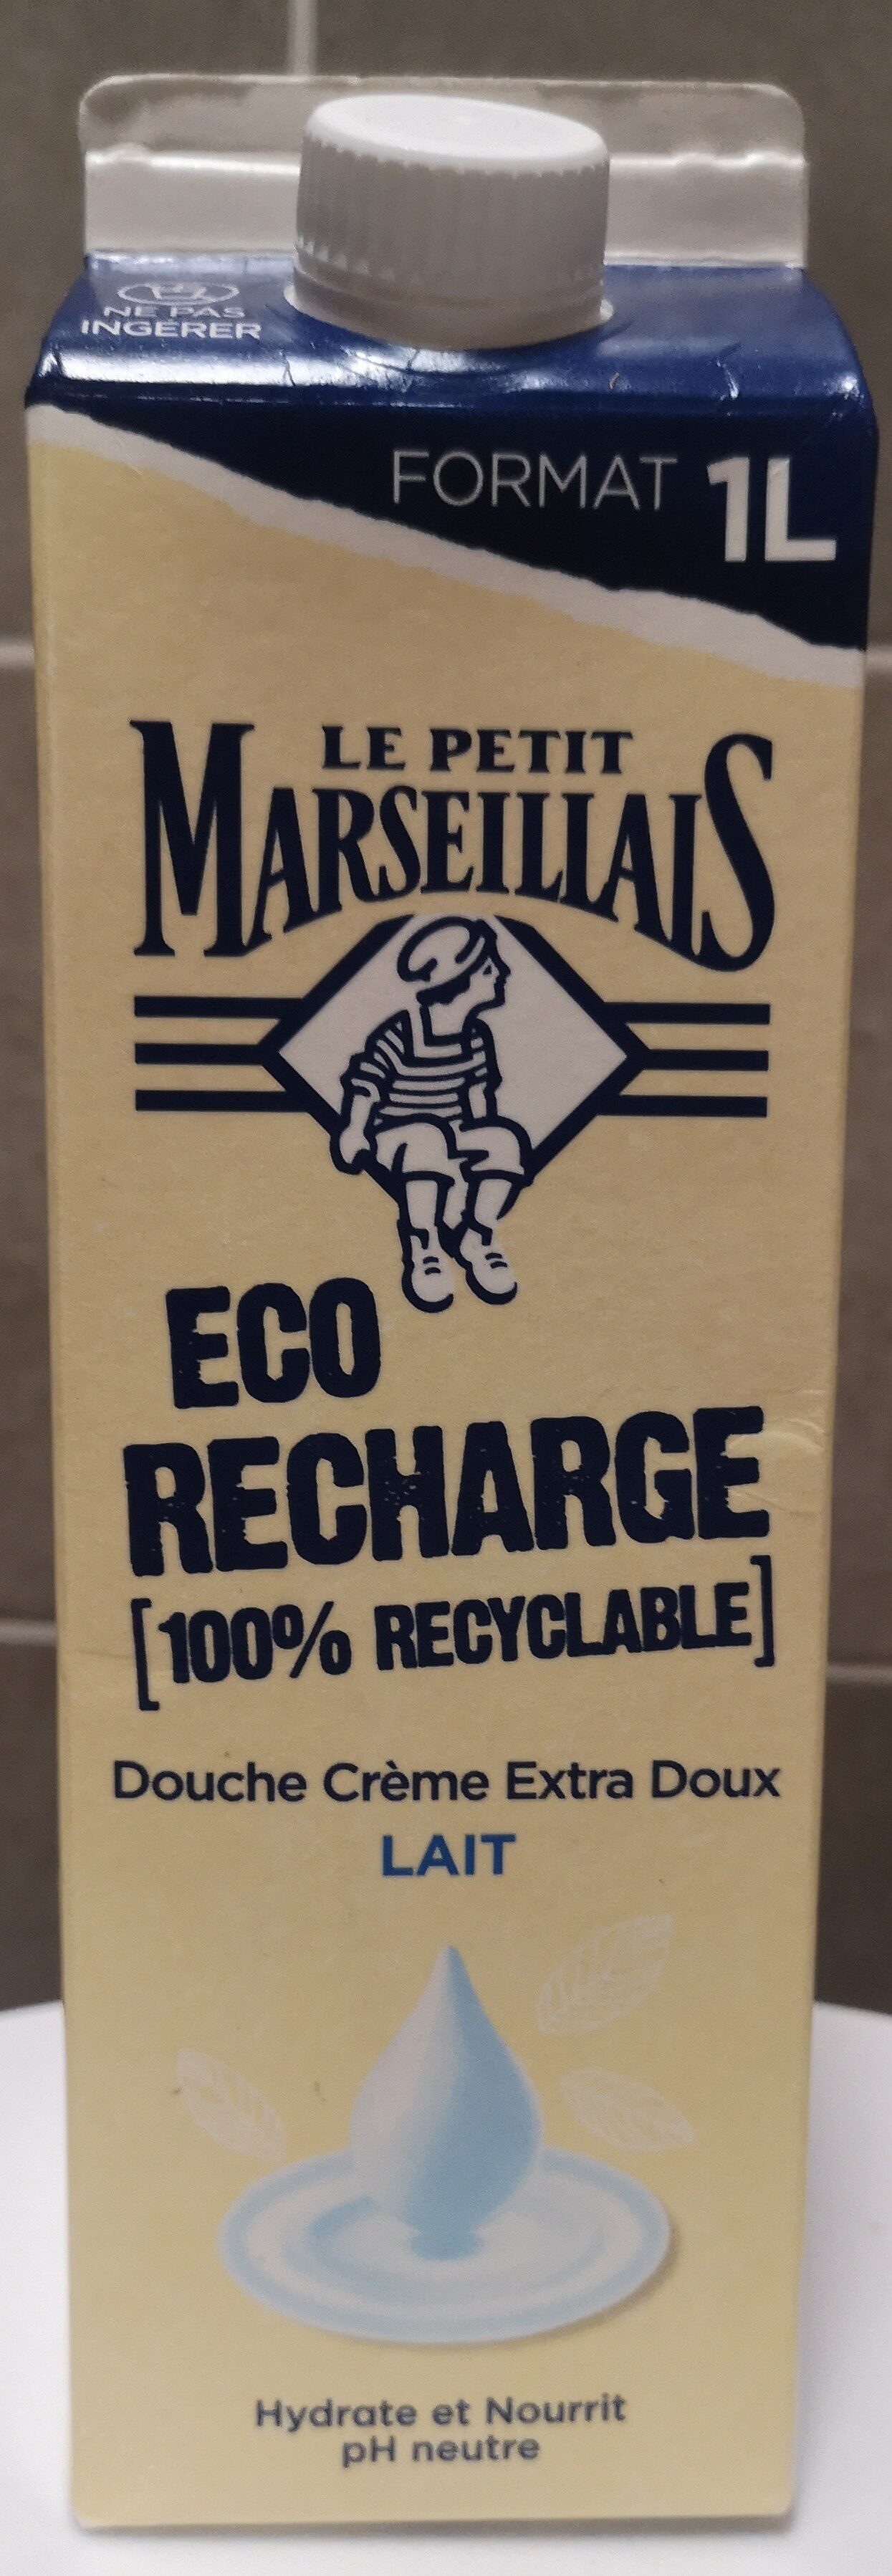 Eco recharge Lait - Product - fr